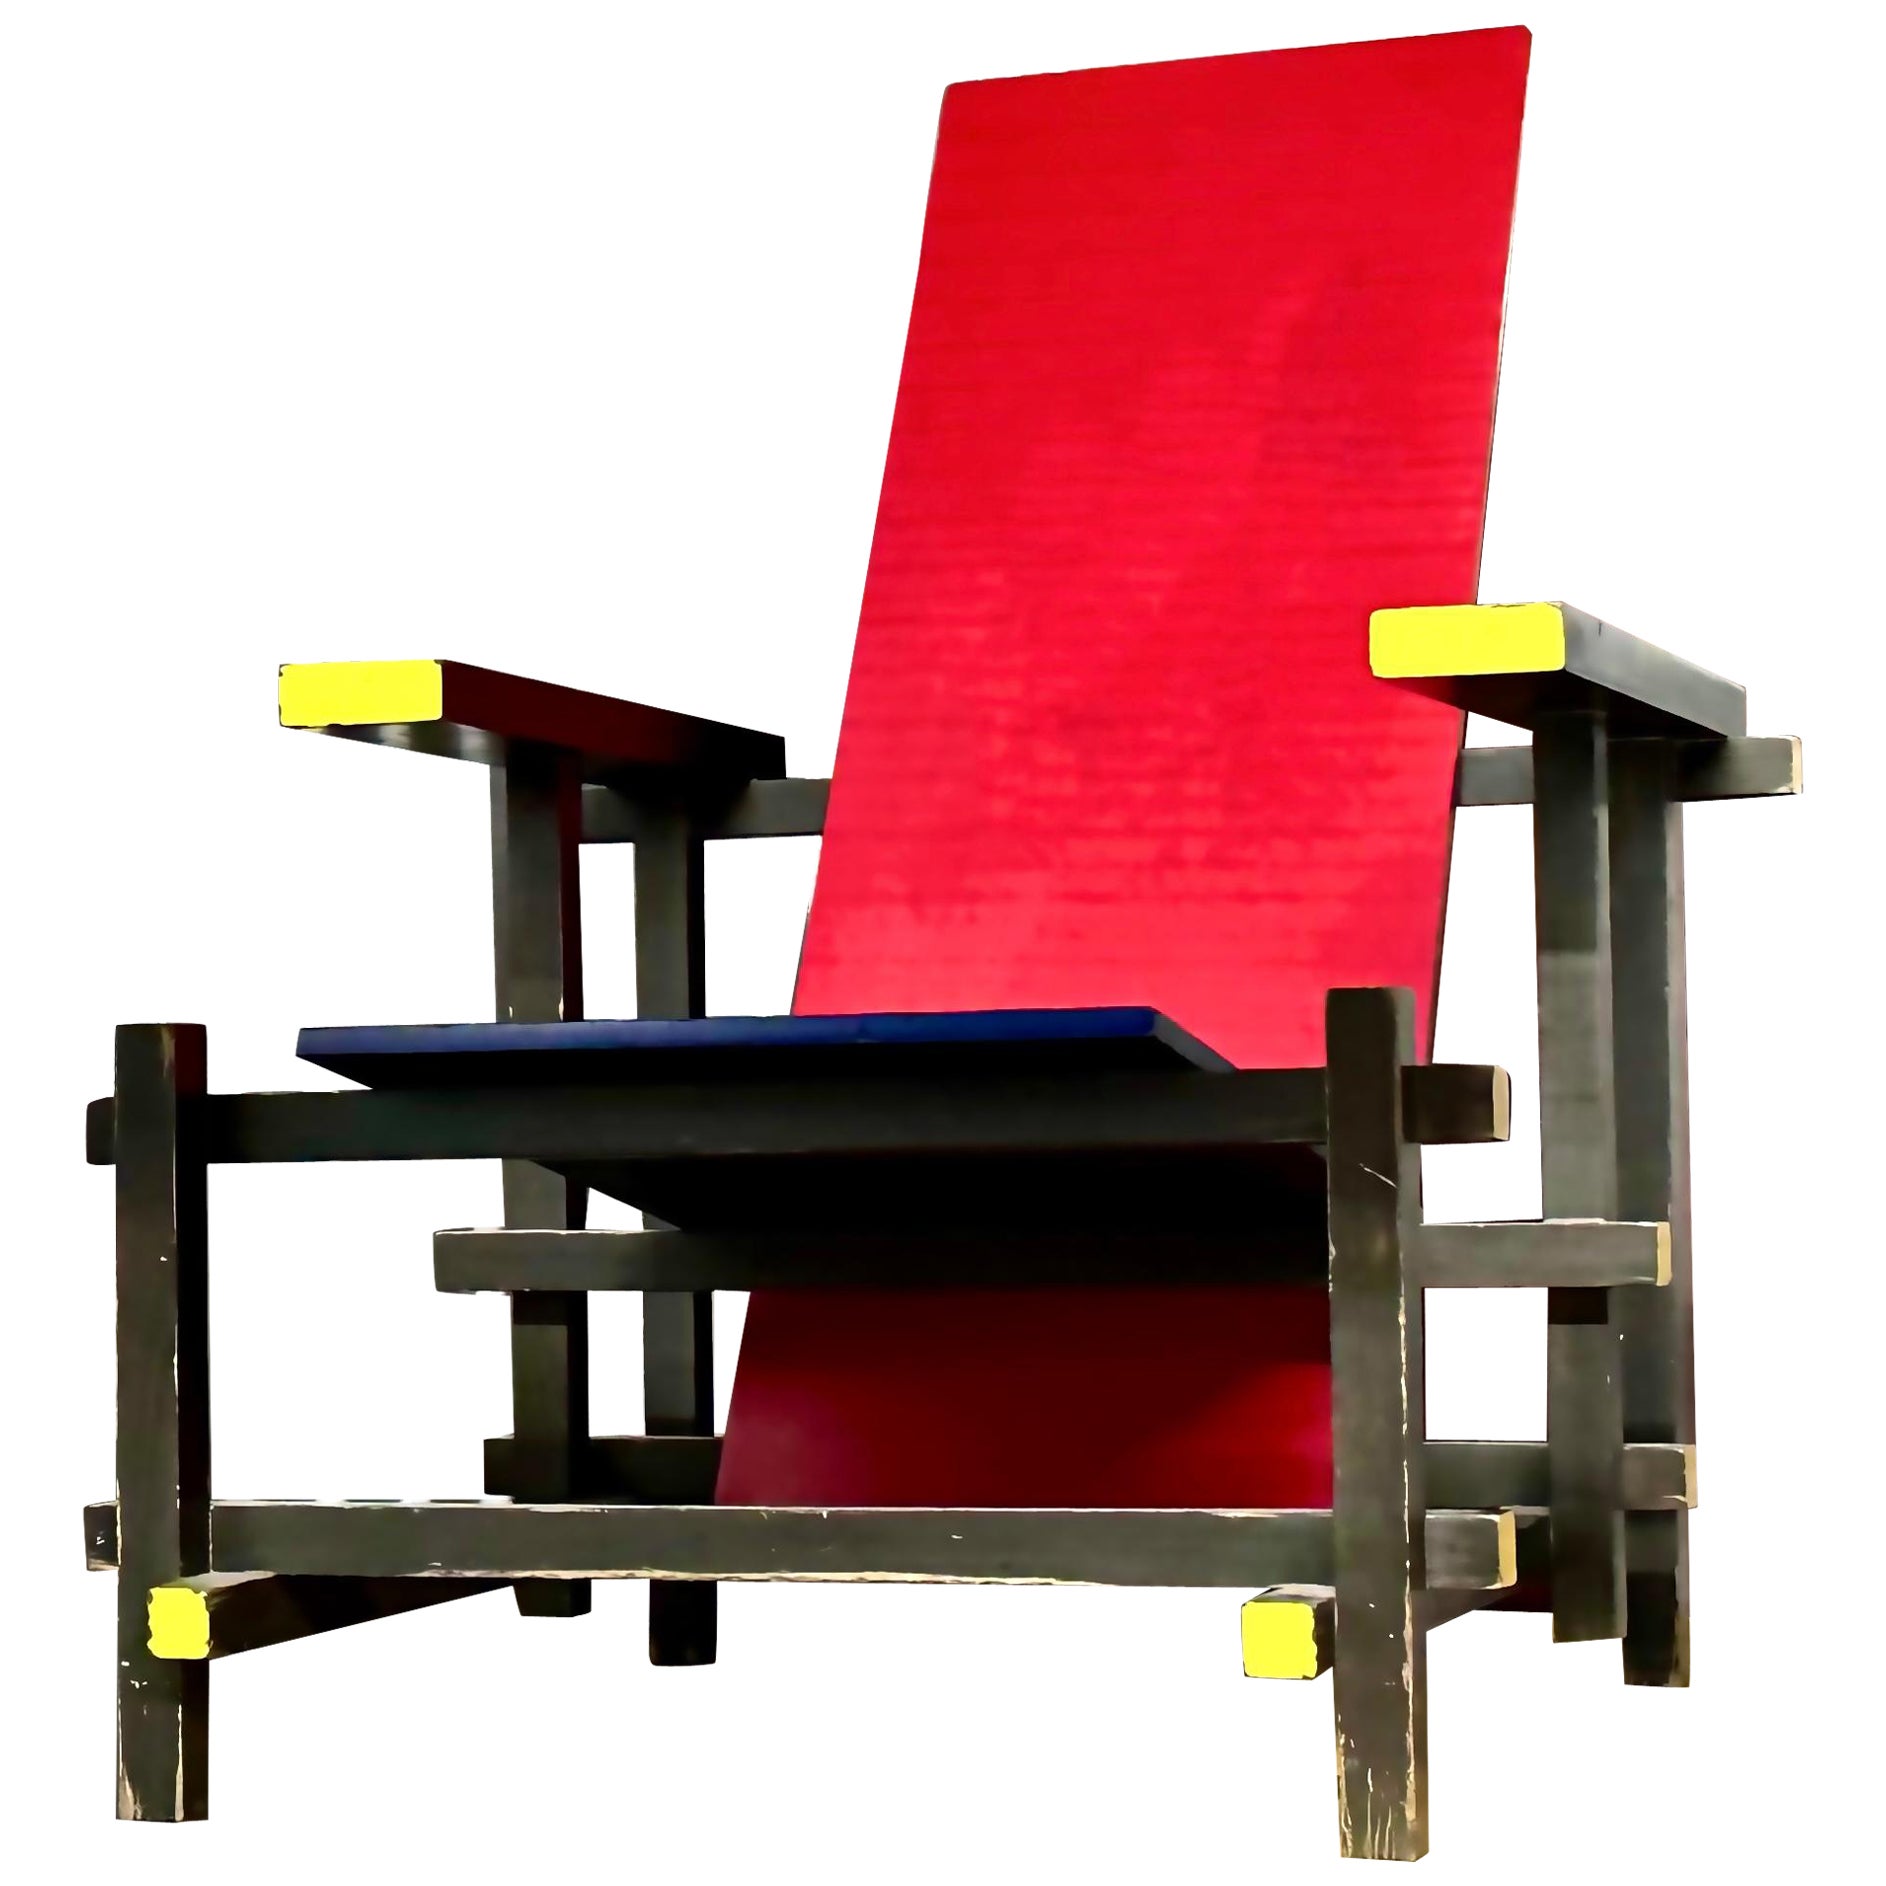 Roter und blauer Stuhl von Gerrit Rietveld für Cassina, Italien, De Stijl Modern, 1918